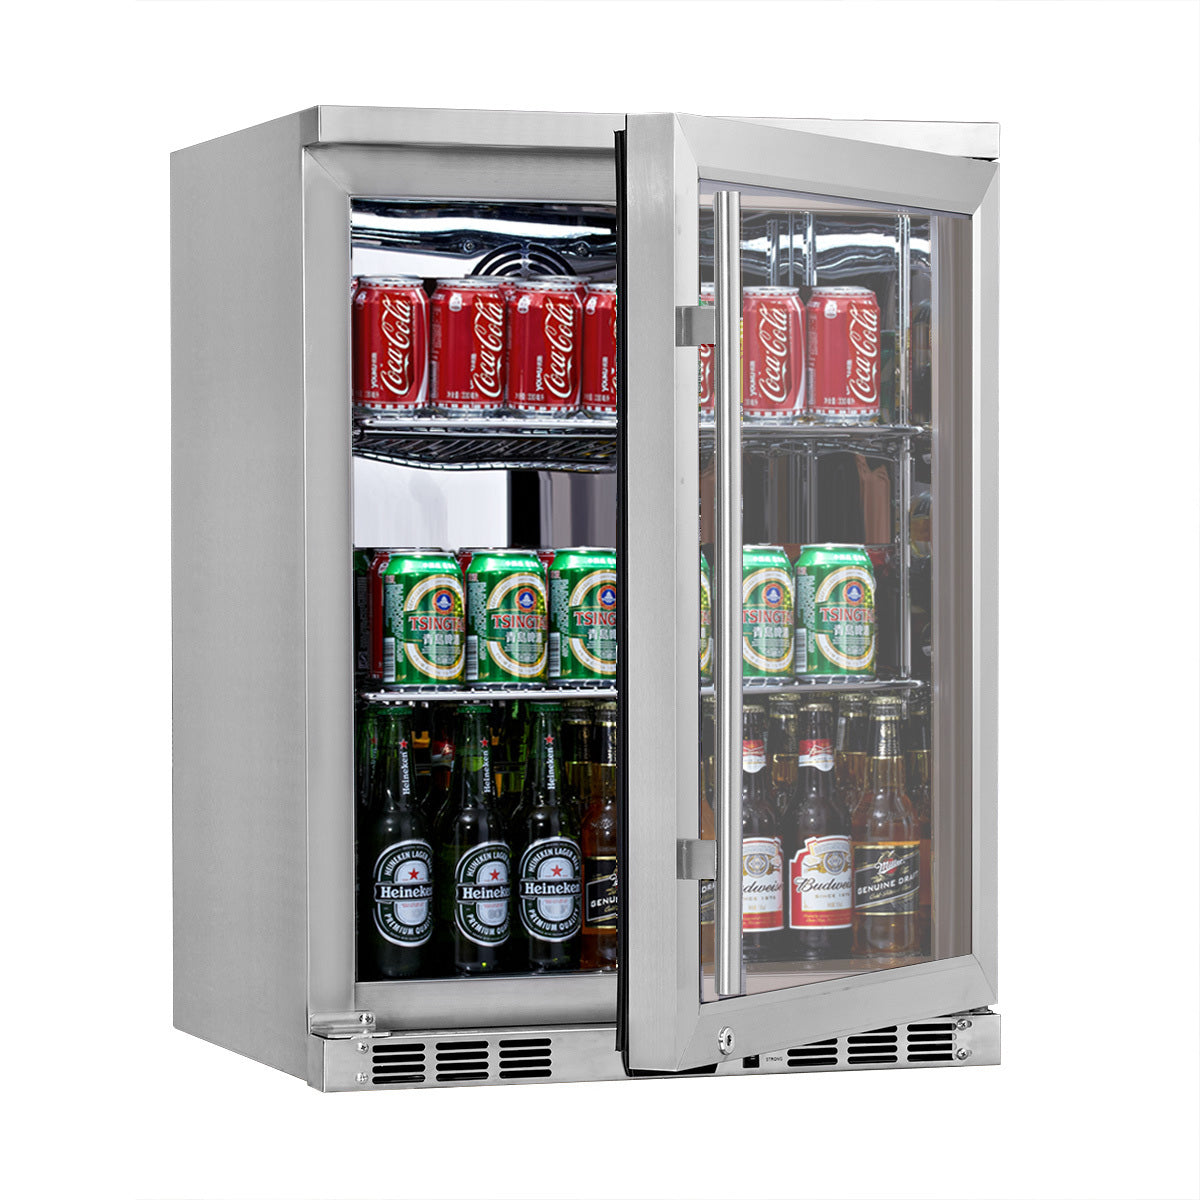 https://kingsbottle.com/cdn/shop/products/24_inch_heating_glass_door_under_counter_beer_cooler_KBU55M.jpg?v=1652912612